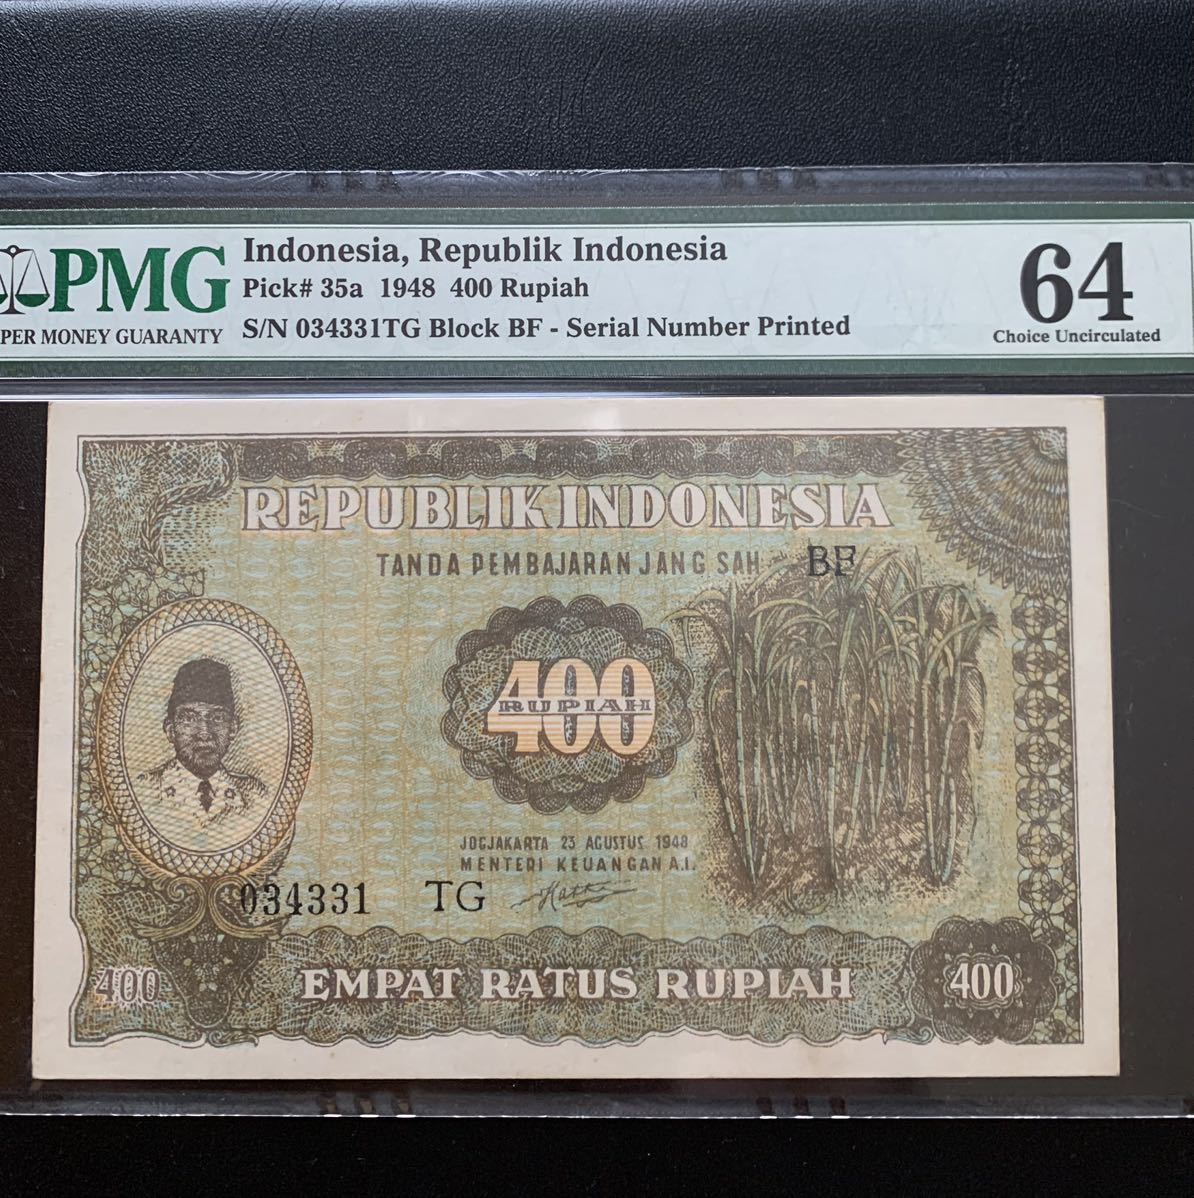 インドネシア 旧紙幣 400ルピア PMG鑑定64 本物 未使用 劇レア品